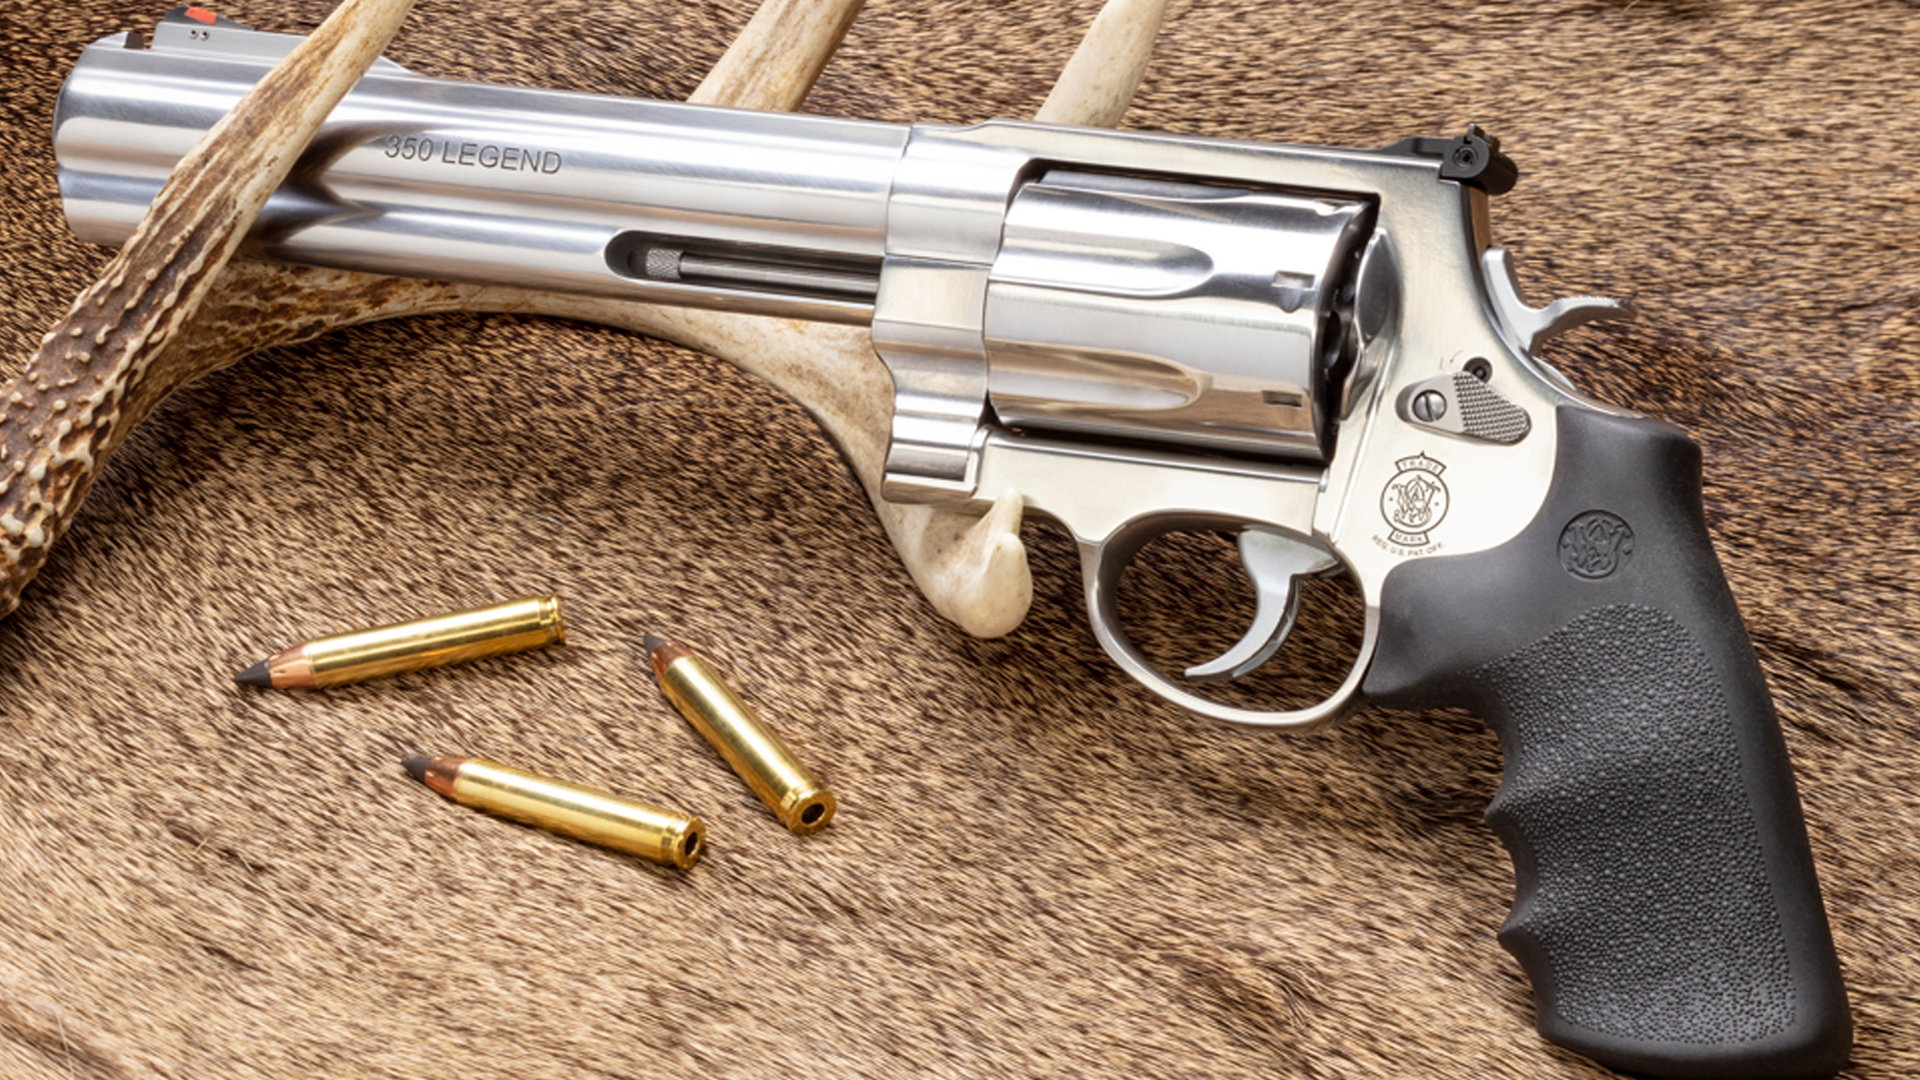 Model 350 revolver